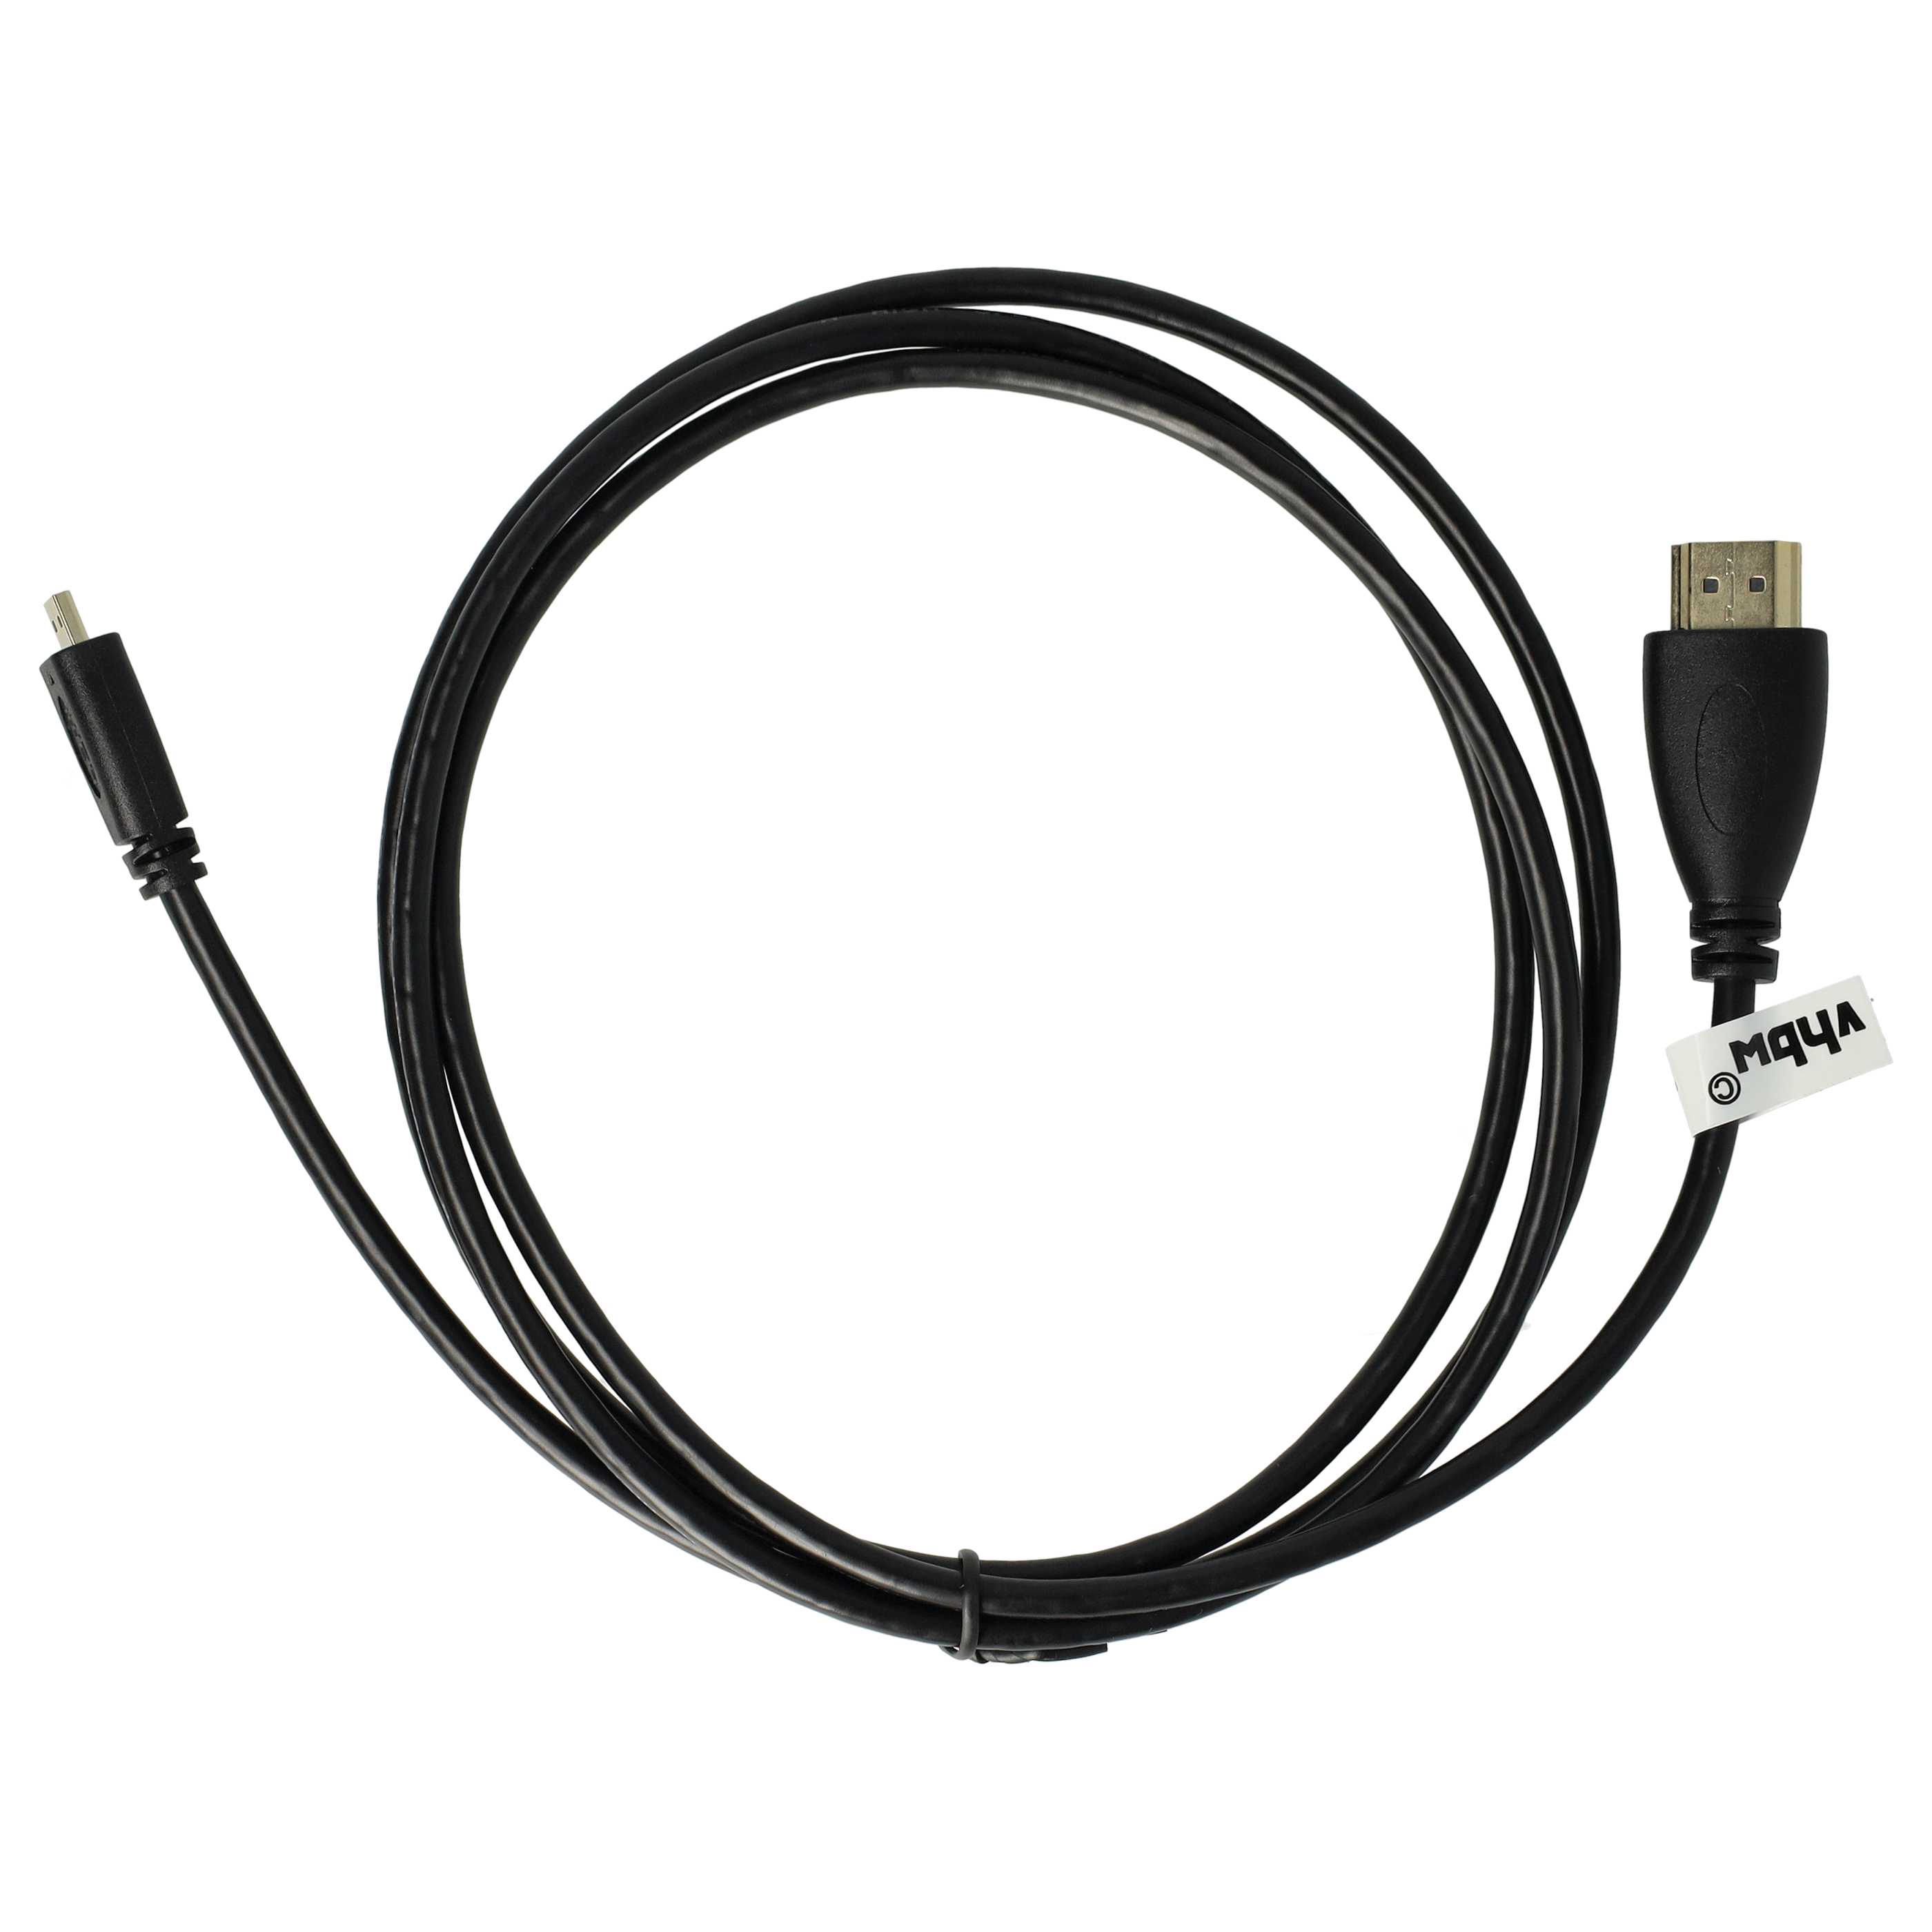 Cable HDMI, HDMI micro a HDMI 1.4 1,4m para tablets, smartphones, cámaras